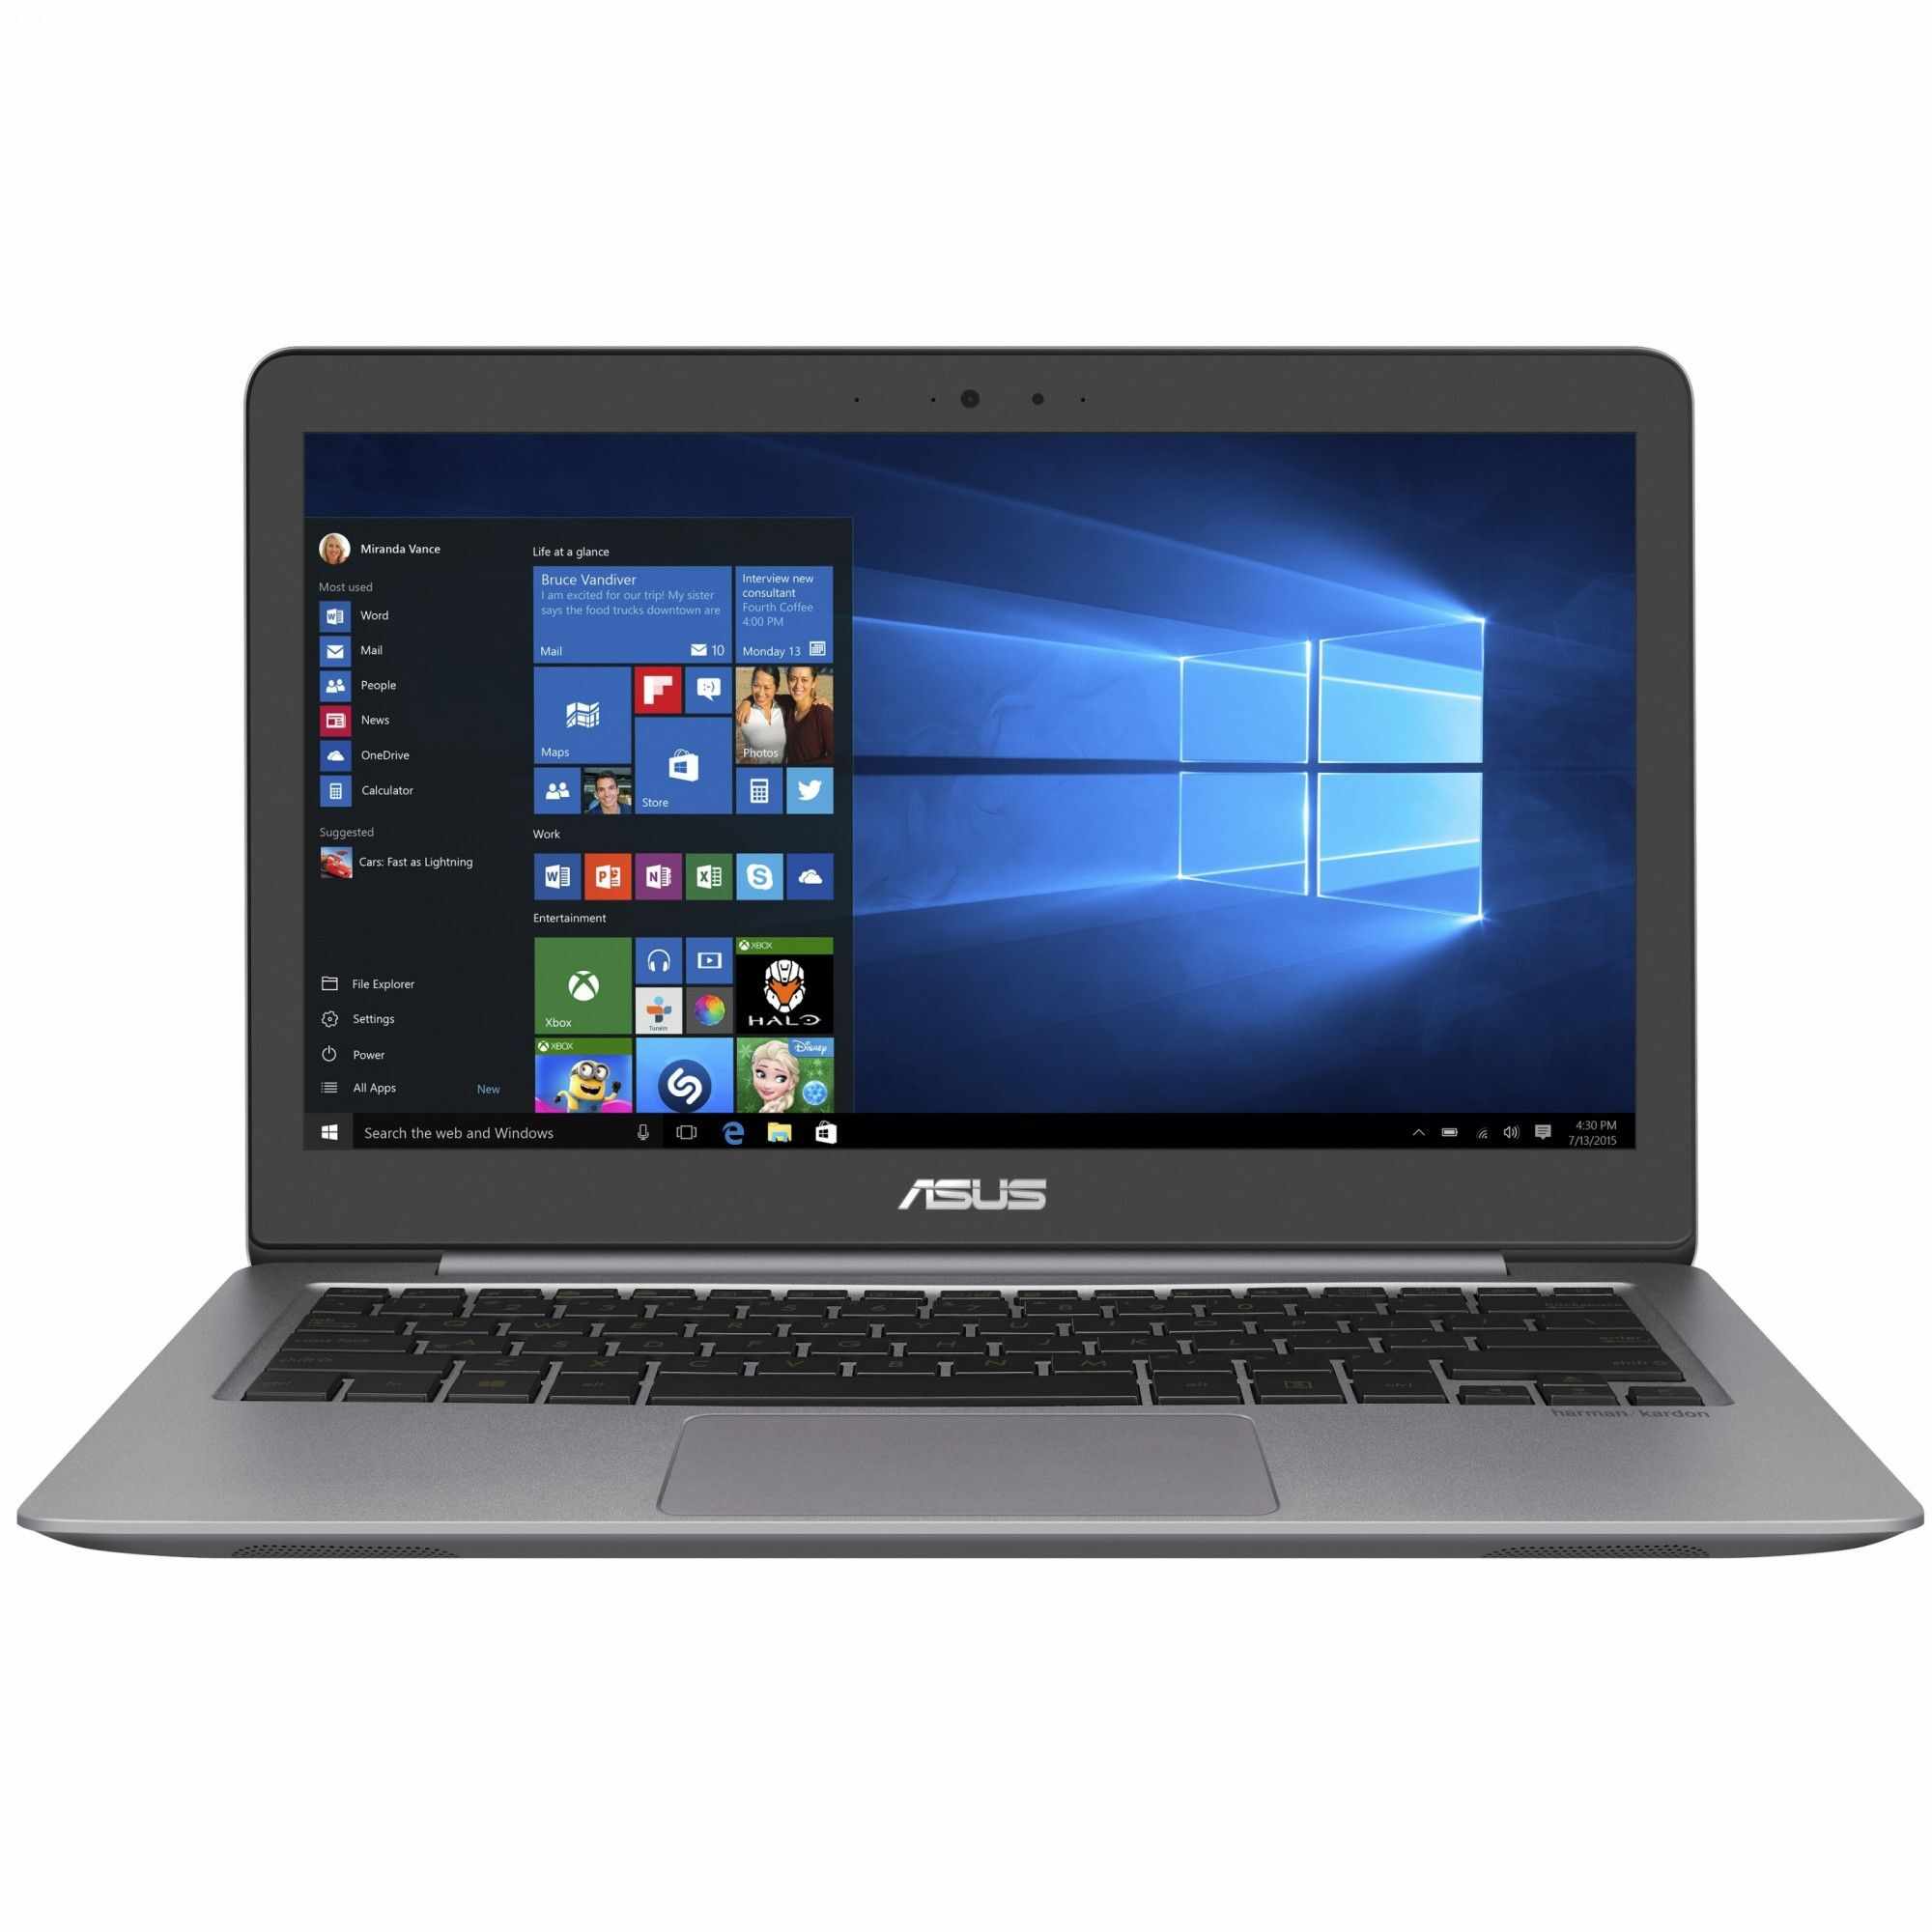 Laptop Asus ZenBook UX310UQ-GL015T, Intel Core i7-6500U, 8GB DDR4, HDD 1TB + SSD 128GB, nVidia GeForce GT 940MX 2GB, Windows 10